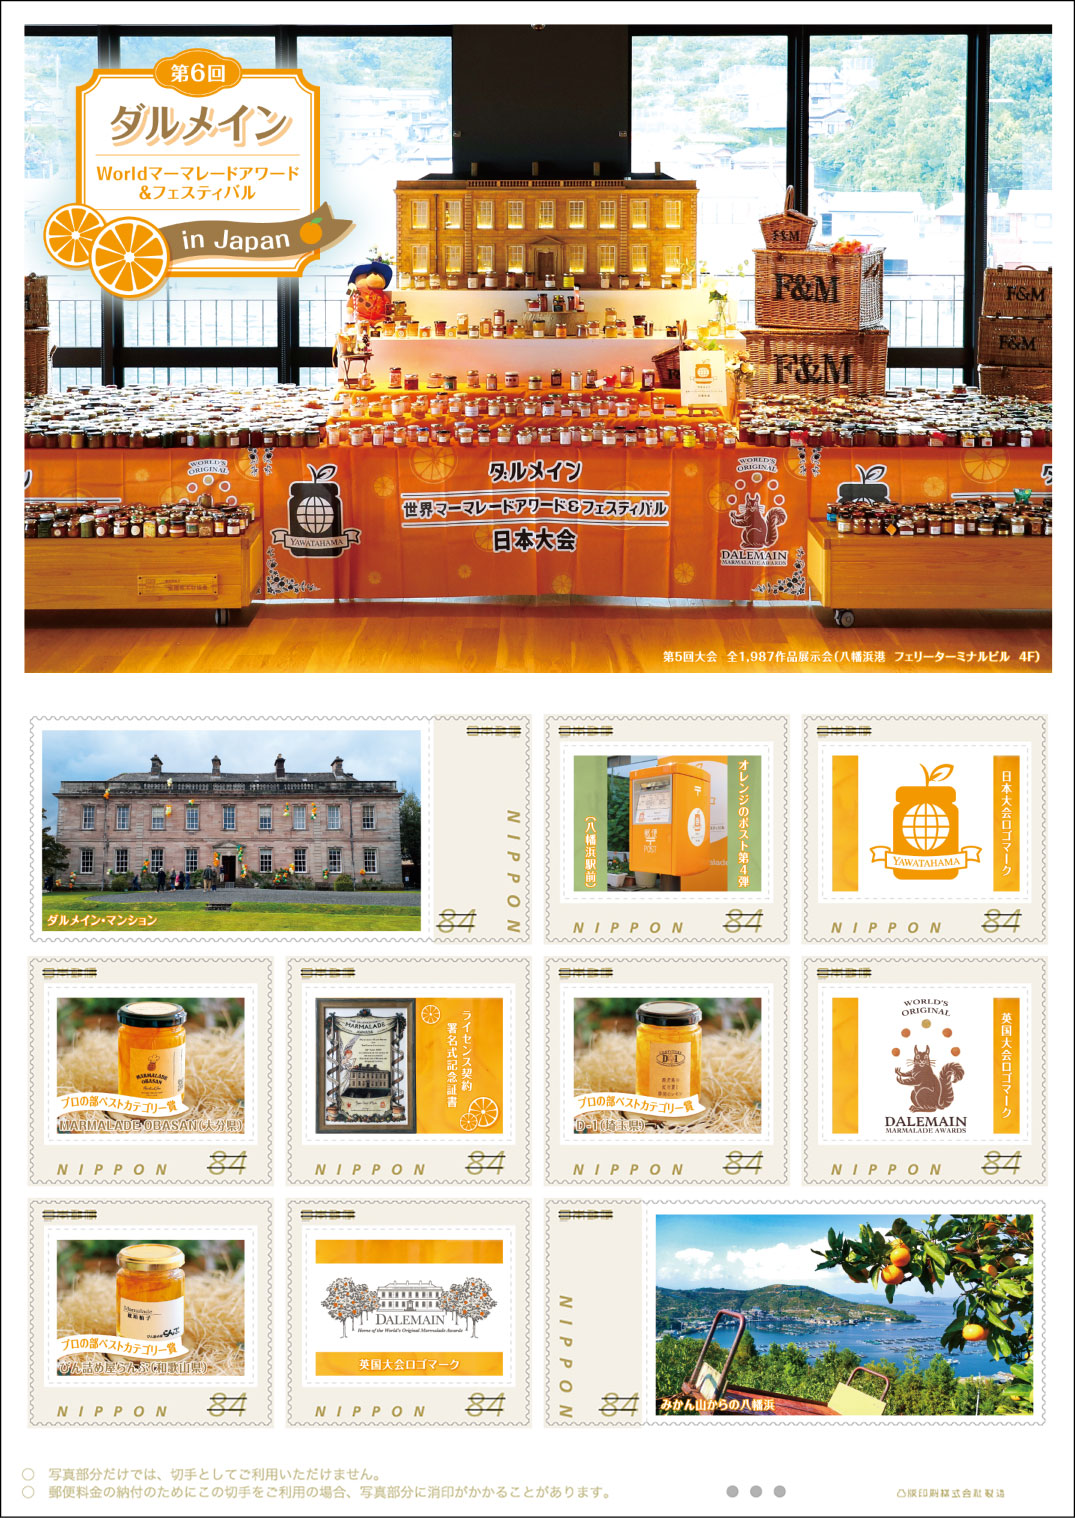 オリジナルフレーム切手「第6回ダルメインWorldマーマレードアワード＆フェスティバル in Japan」の販売開始と贈呈式の開催